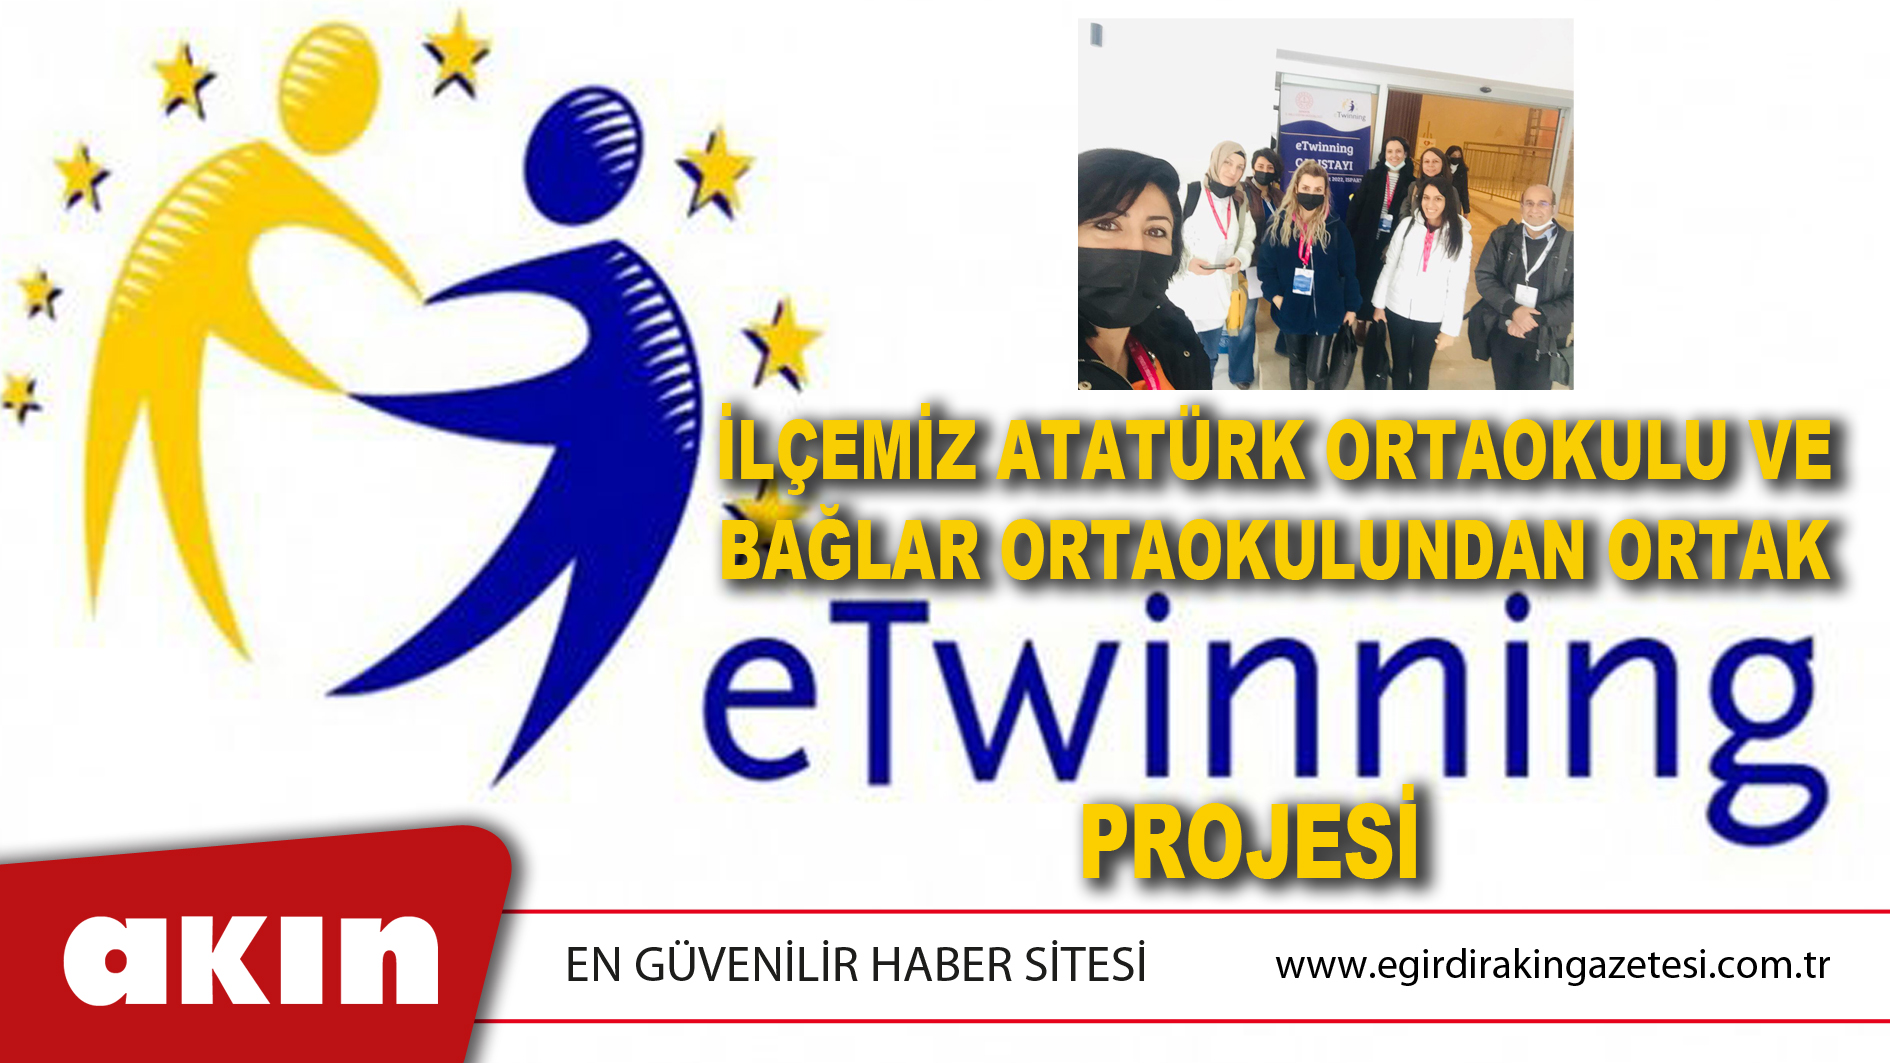 İlçemiz Atatürk Ortaokulu Ve Bağlar Ortaokulundan Ortak e-TWINNING Projesi